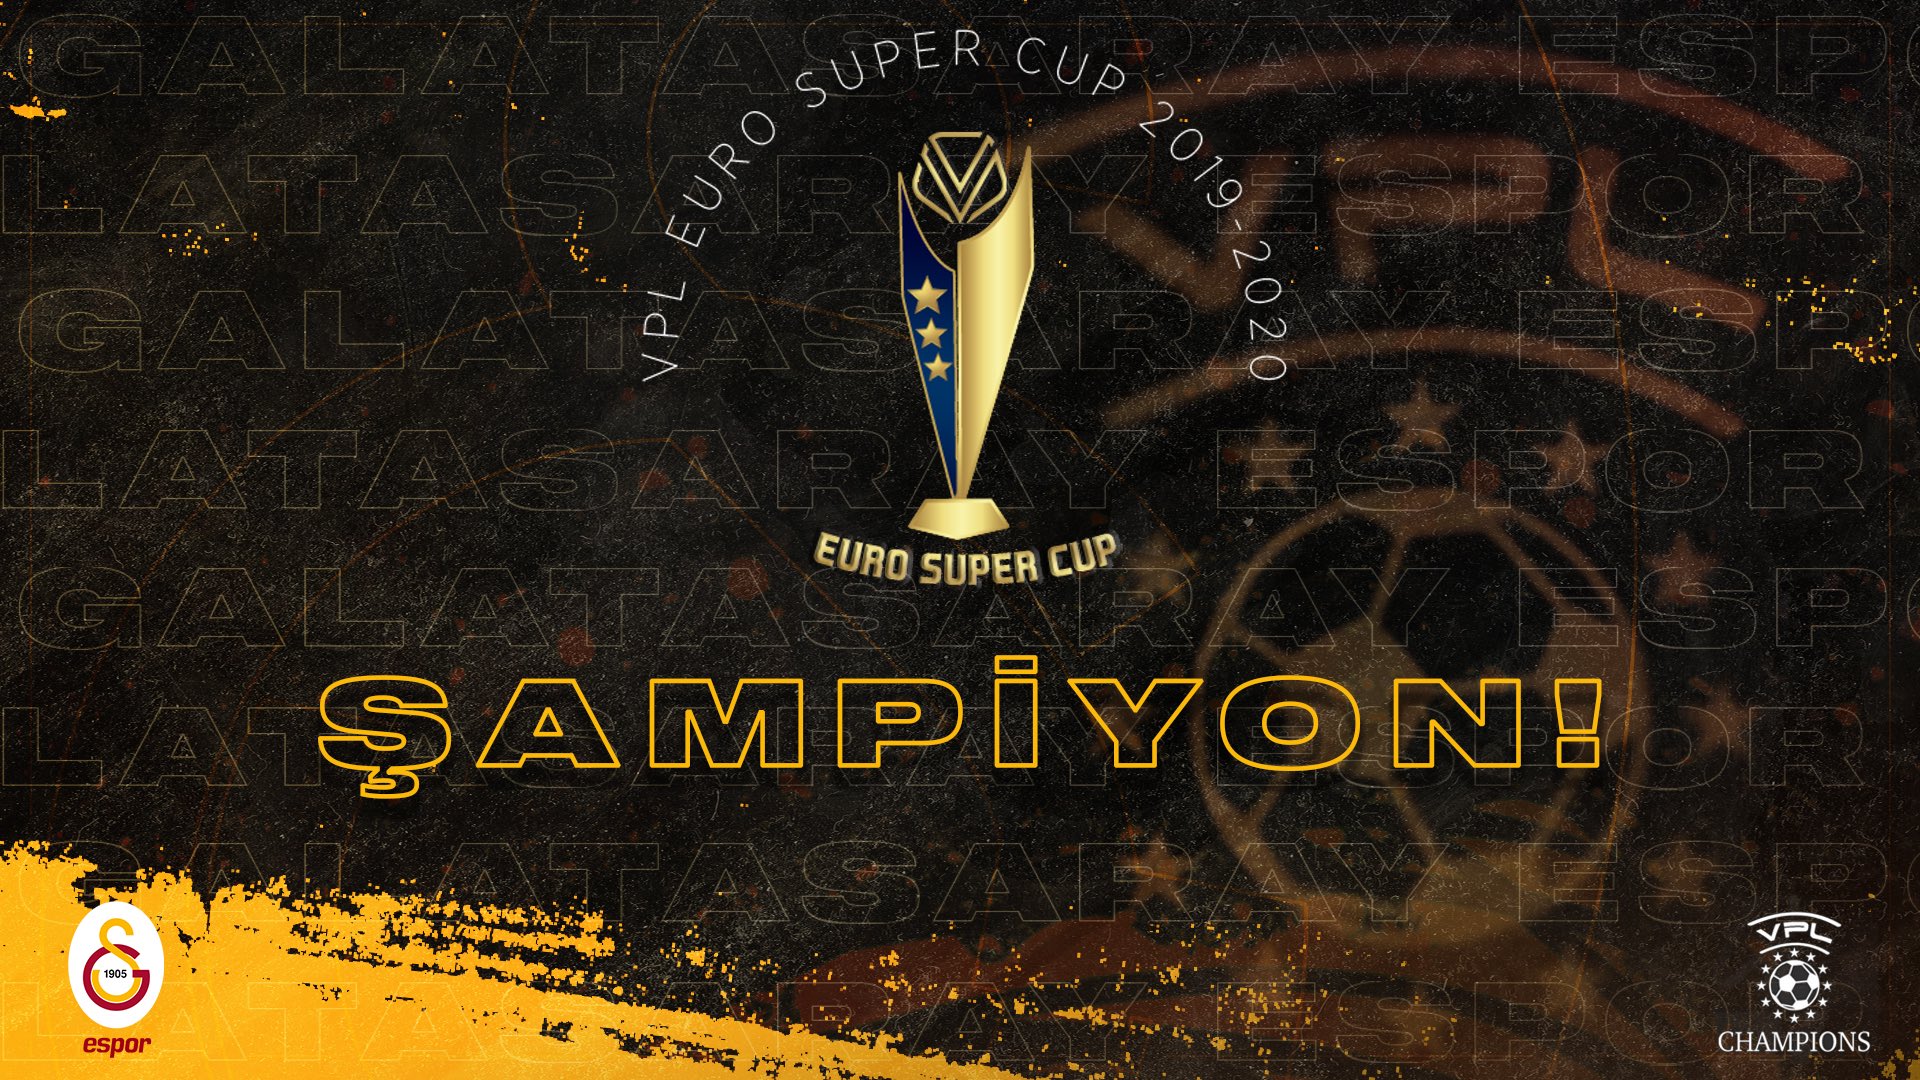 Galatasaray Espor VPL Euro Super Cup 2019-2020 Şampiyonu!